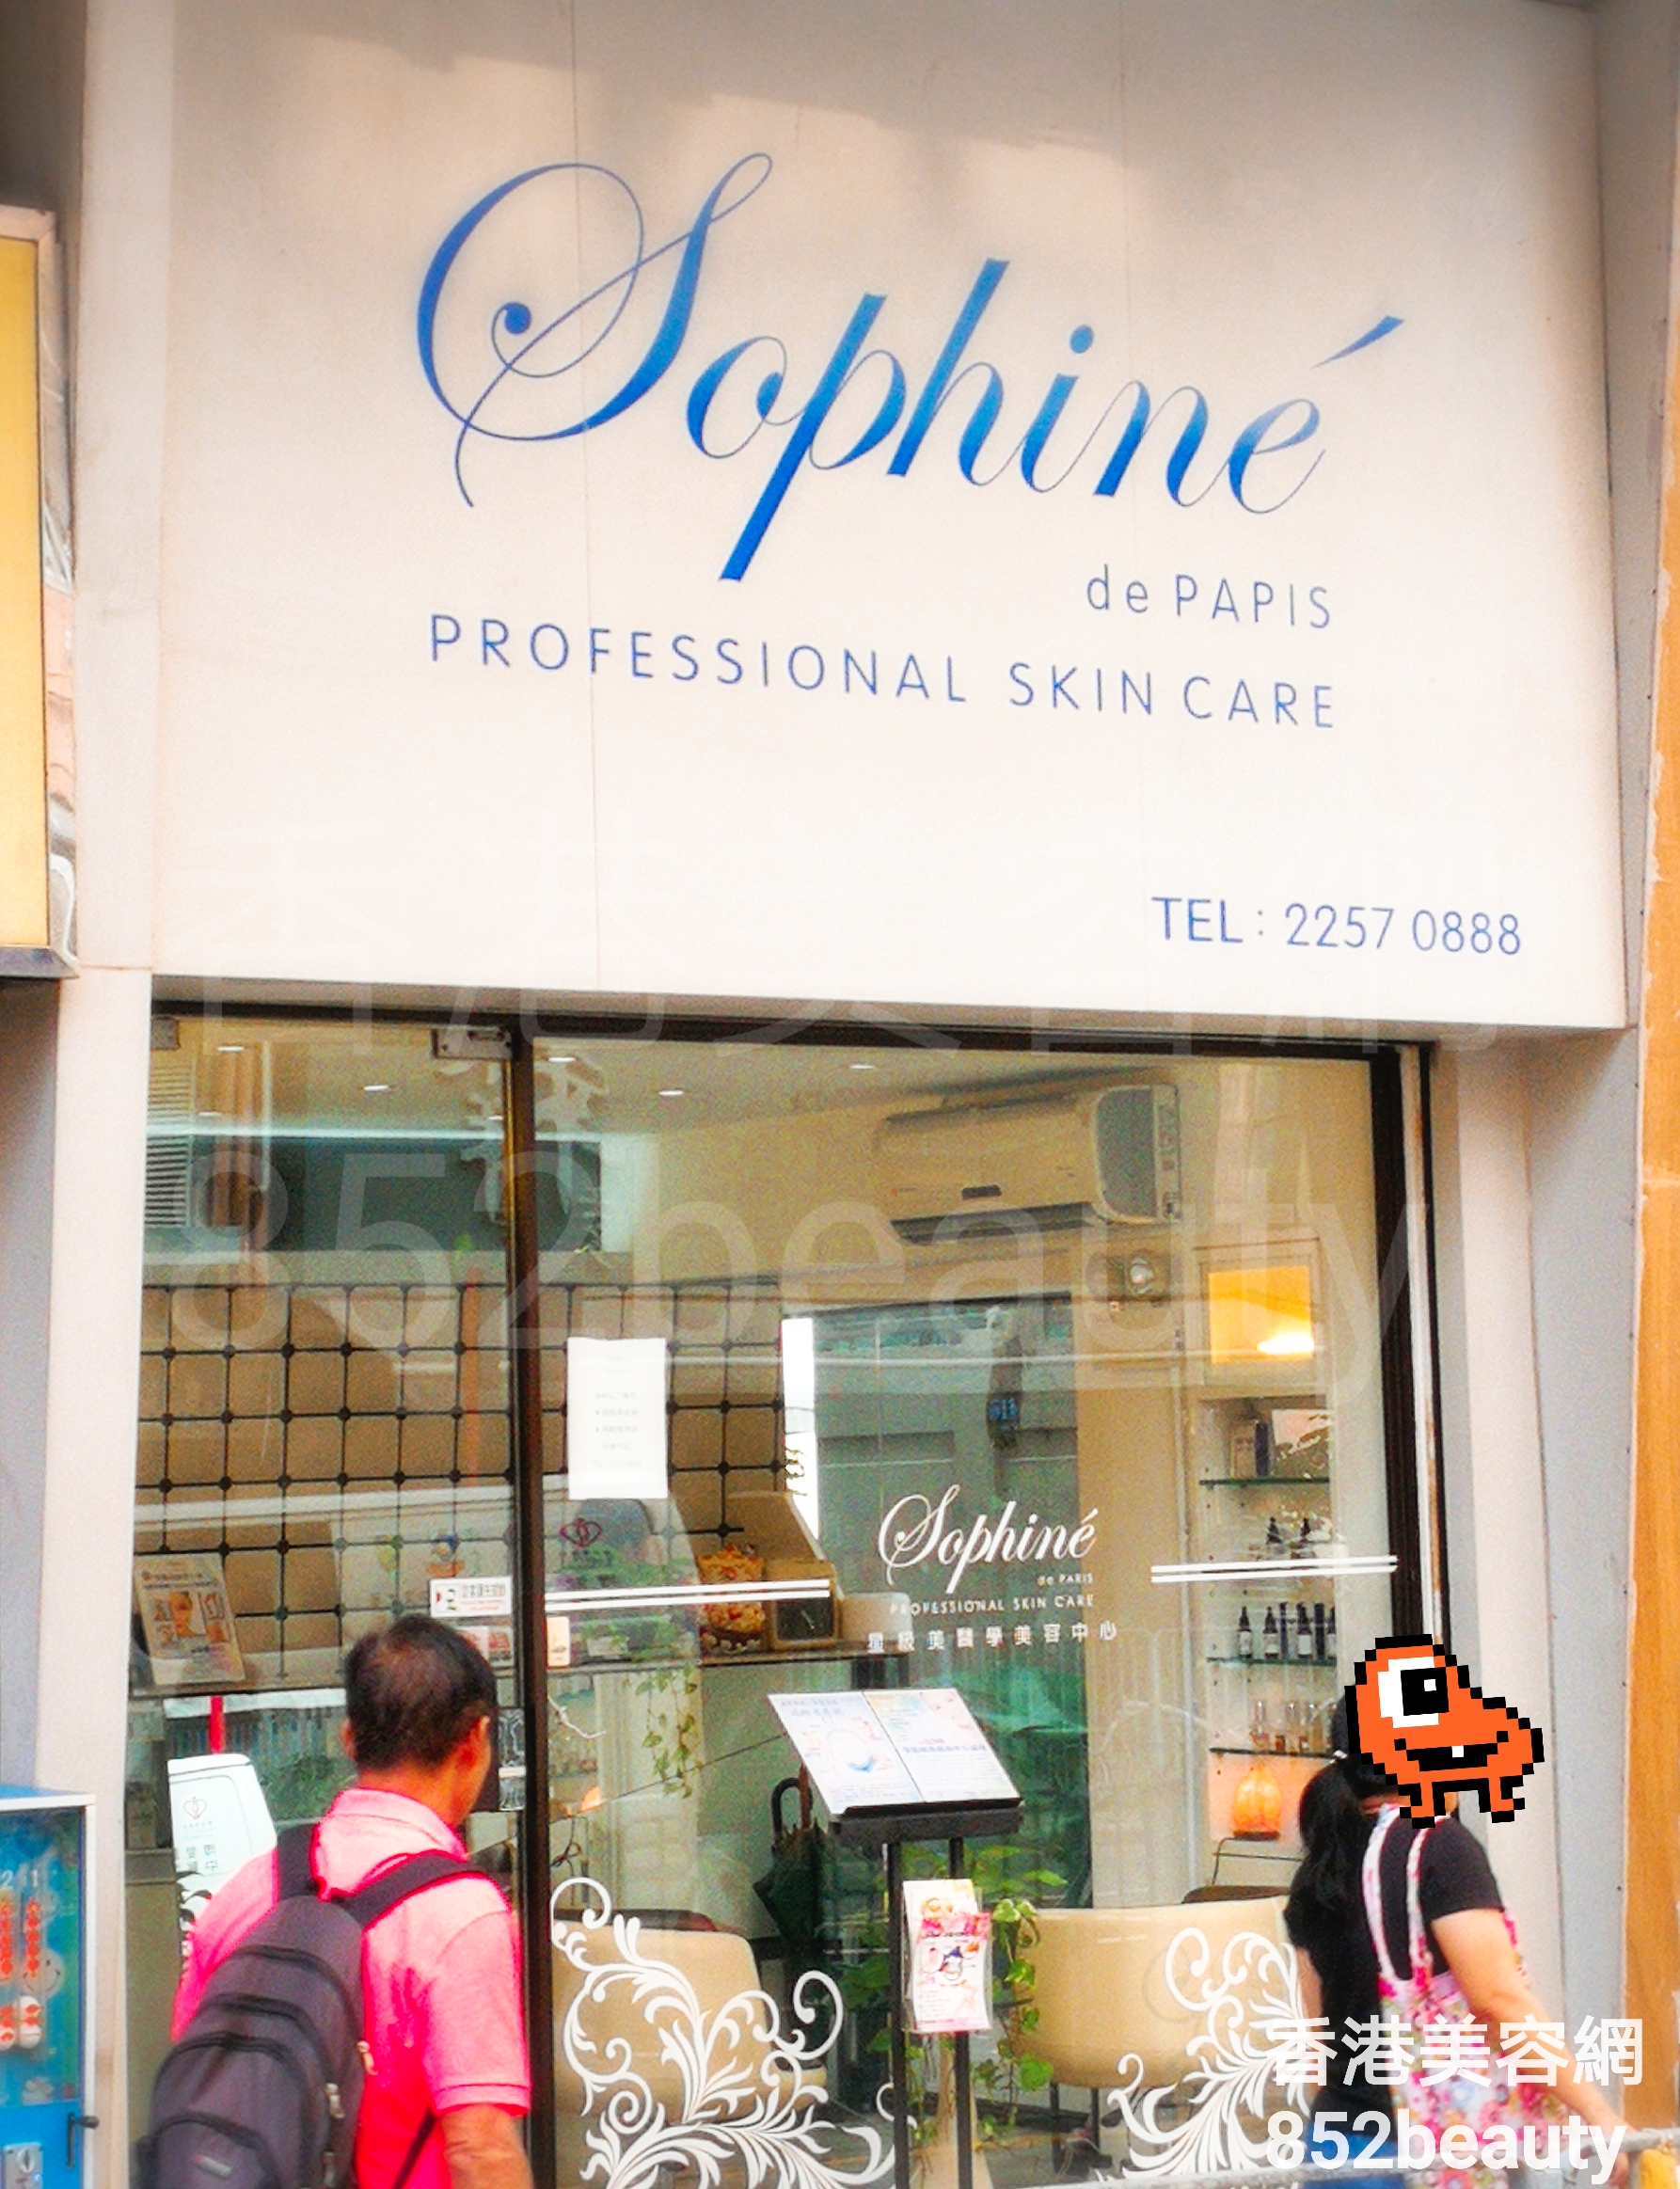 香港美容網 Hong Kong Beauty Salon 美容院 / 美容師: Sophine de PARIS 星級美醫學美容中心